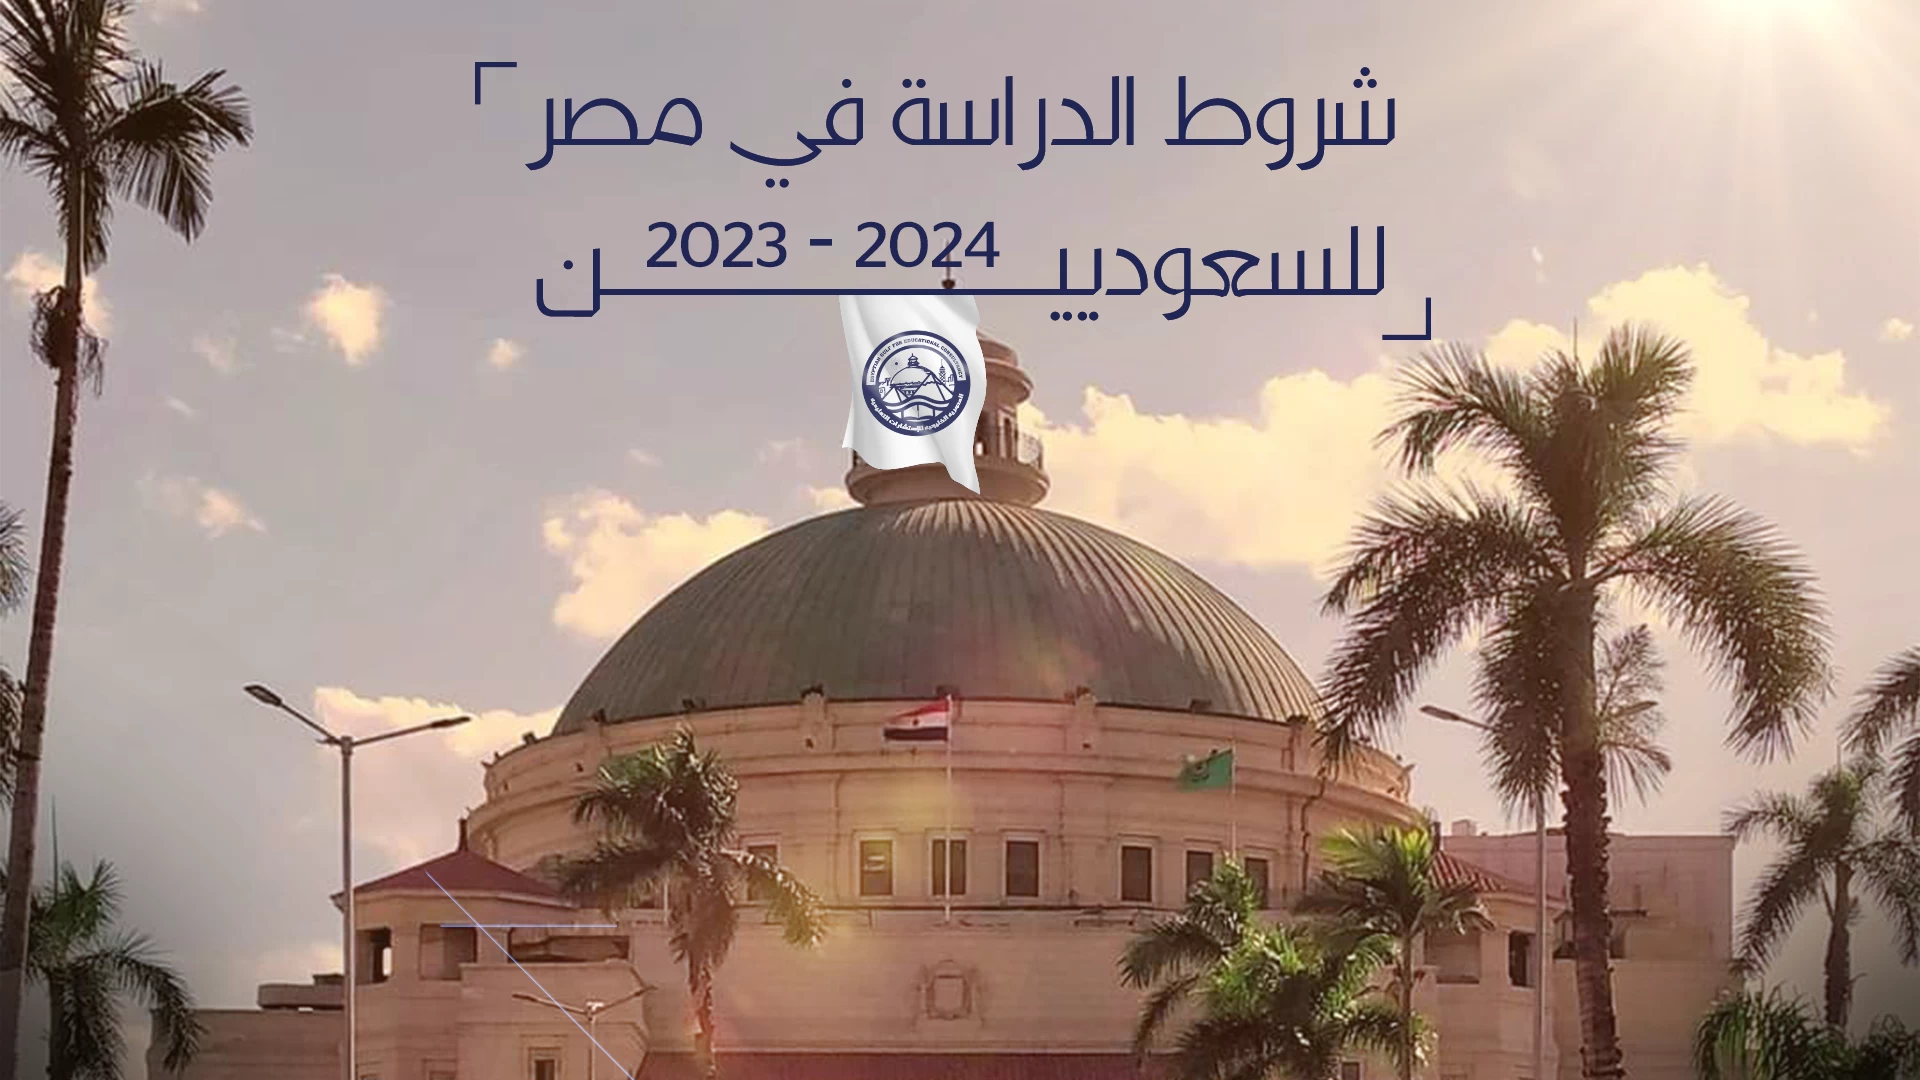 شروط الدراسة في مصر للسعوديين 2023 - 2024